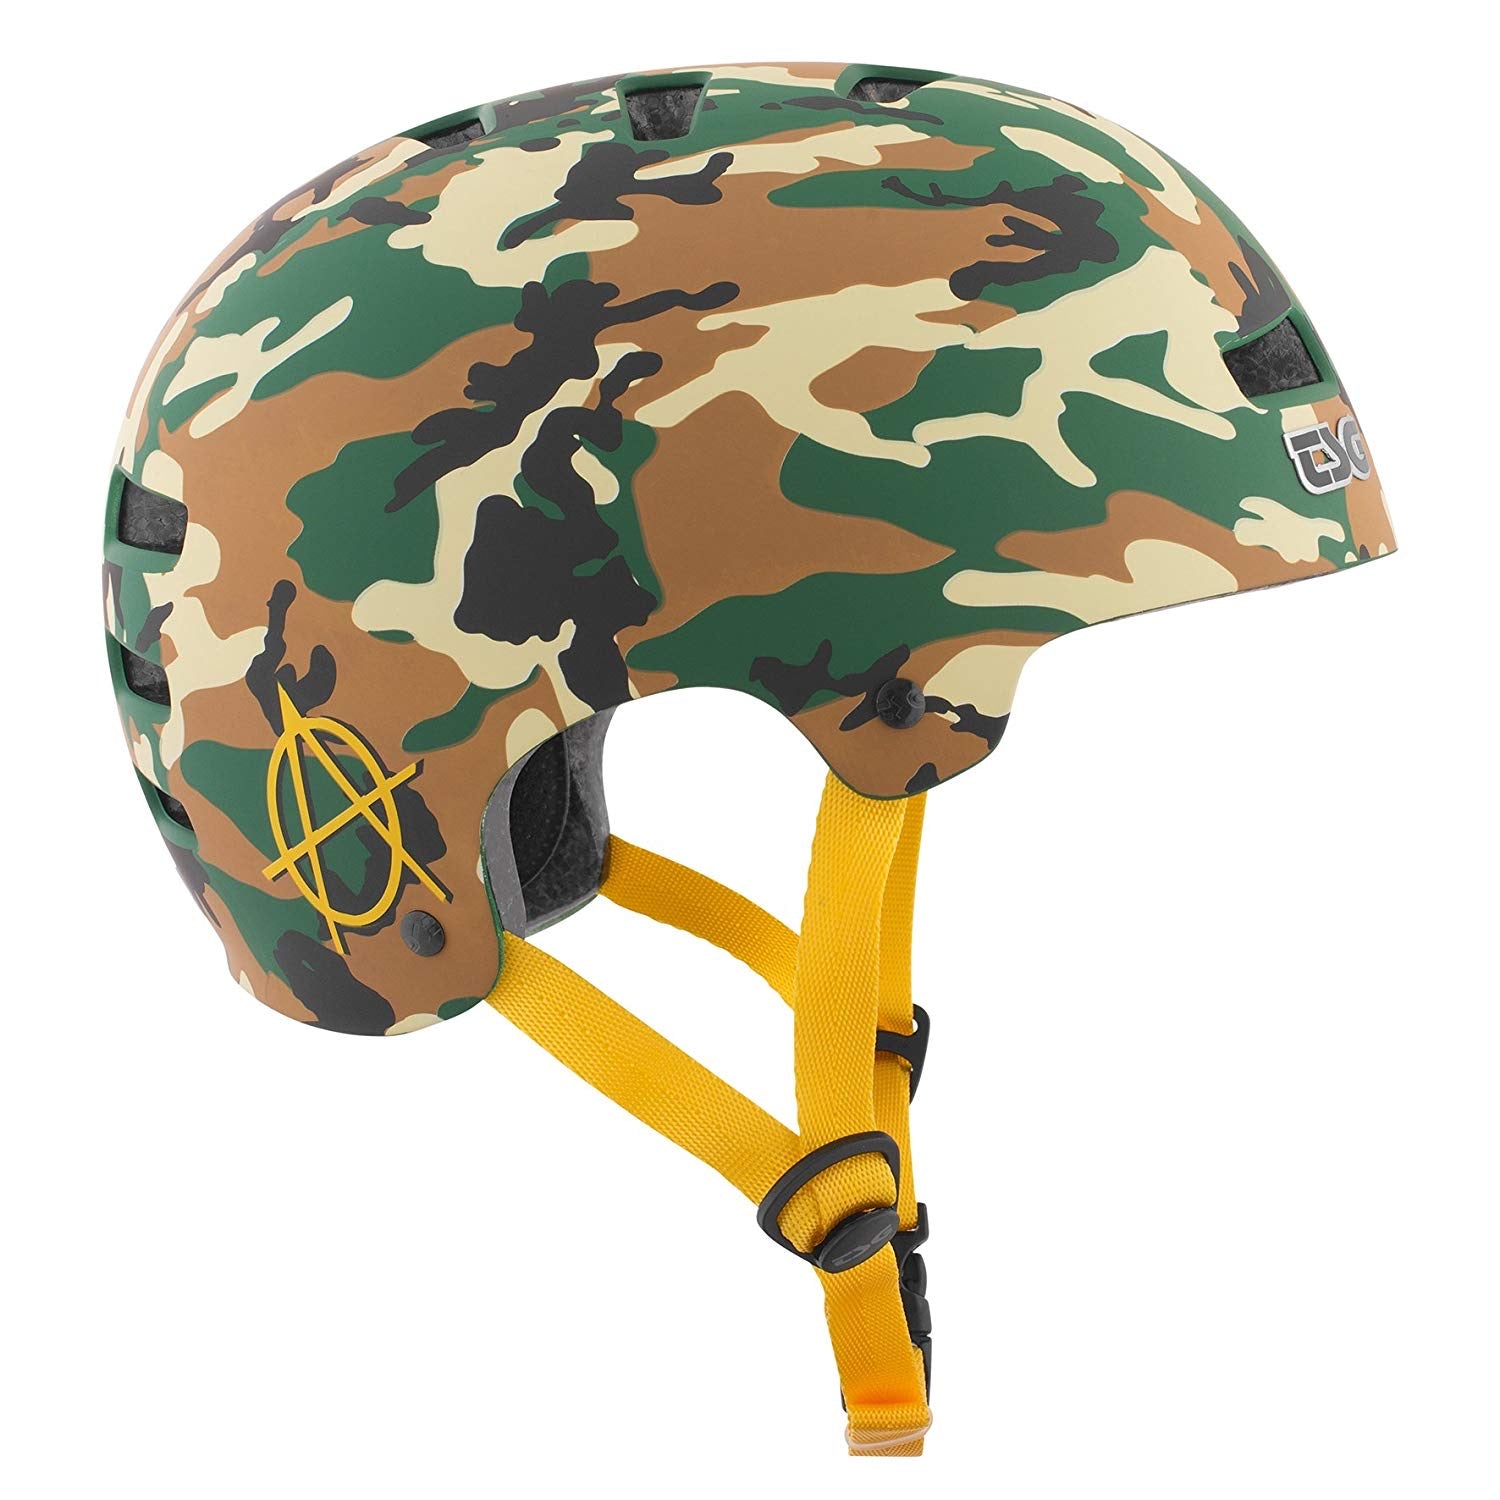 TSG Evolution Graphic Helmet - Various Designs - Momma Trucker Skates